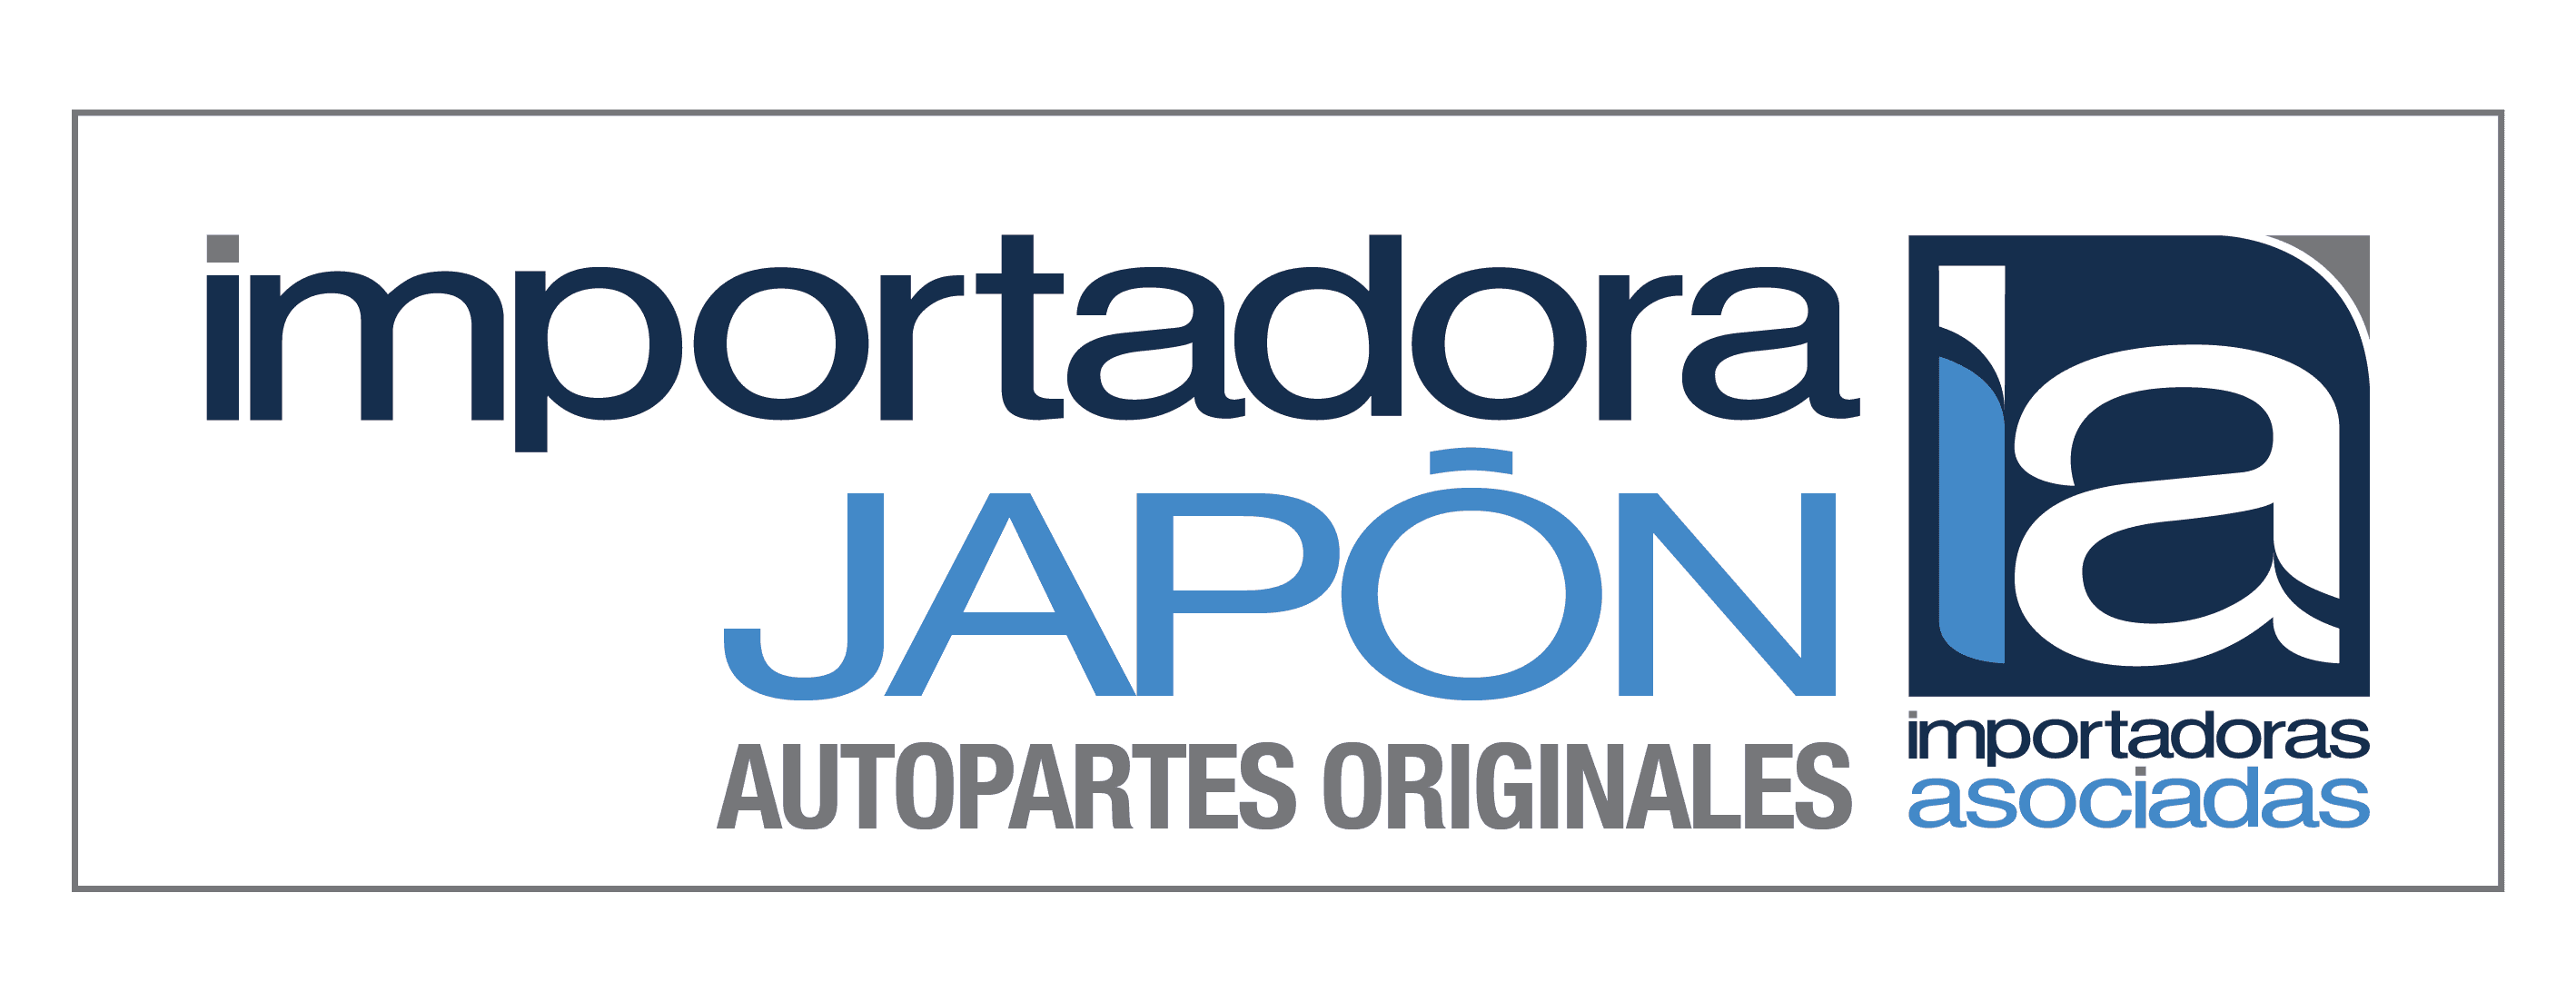 Logo importadora japon autopartes originales